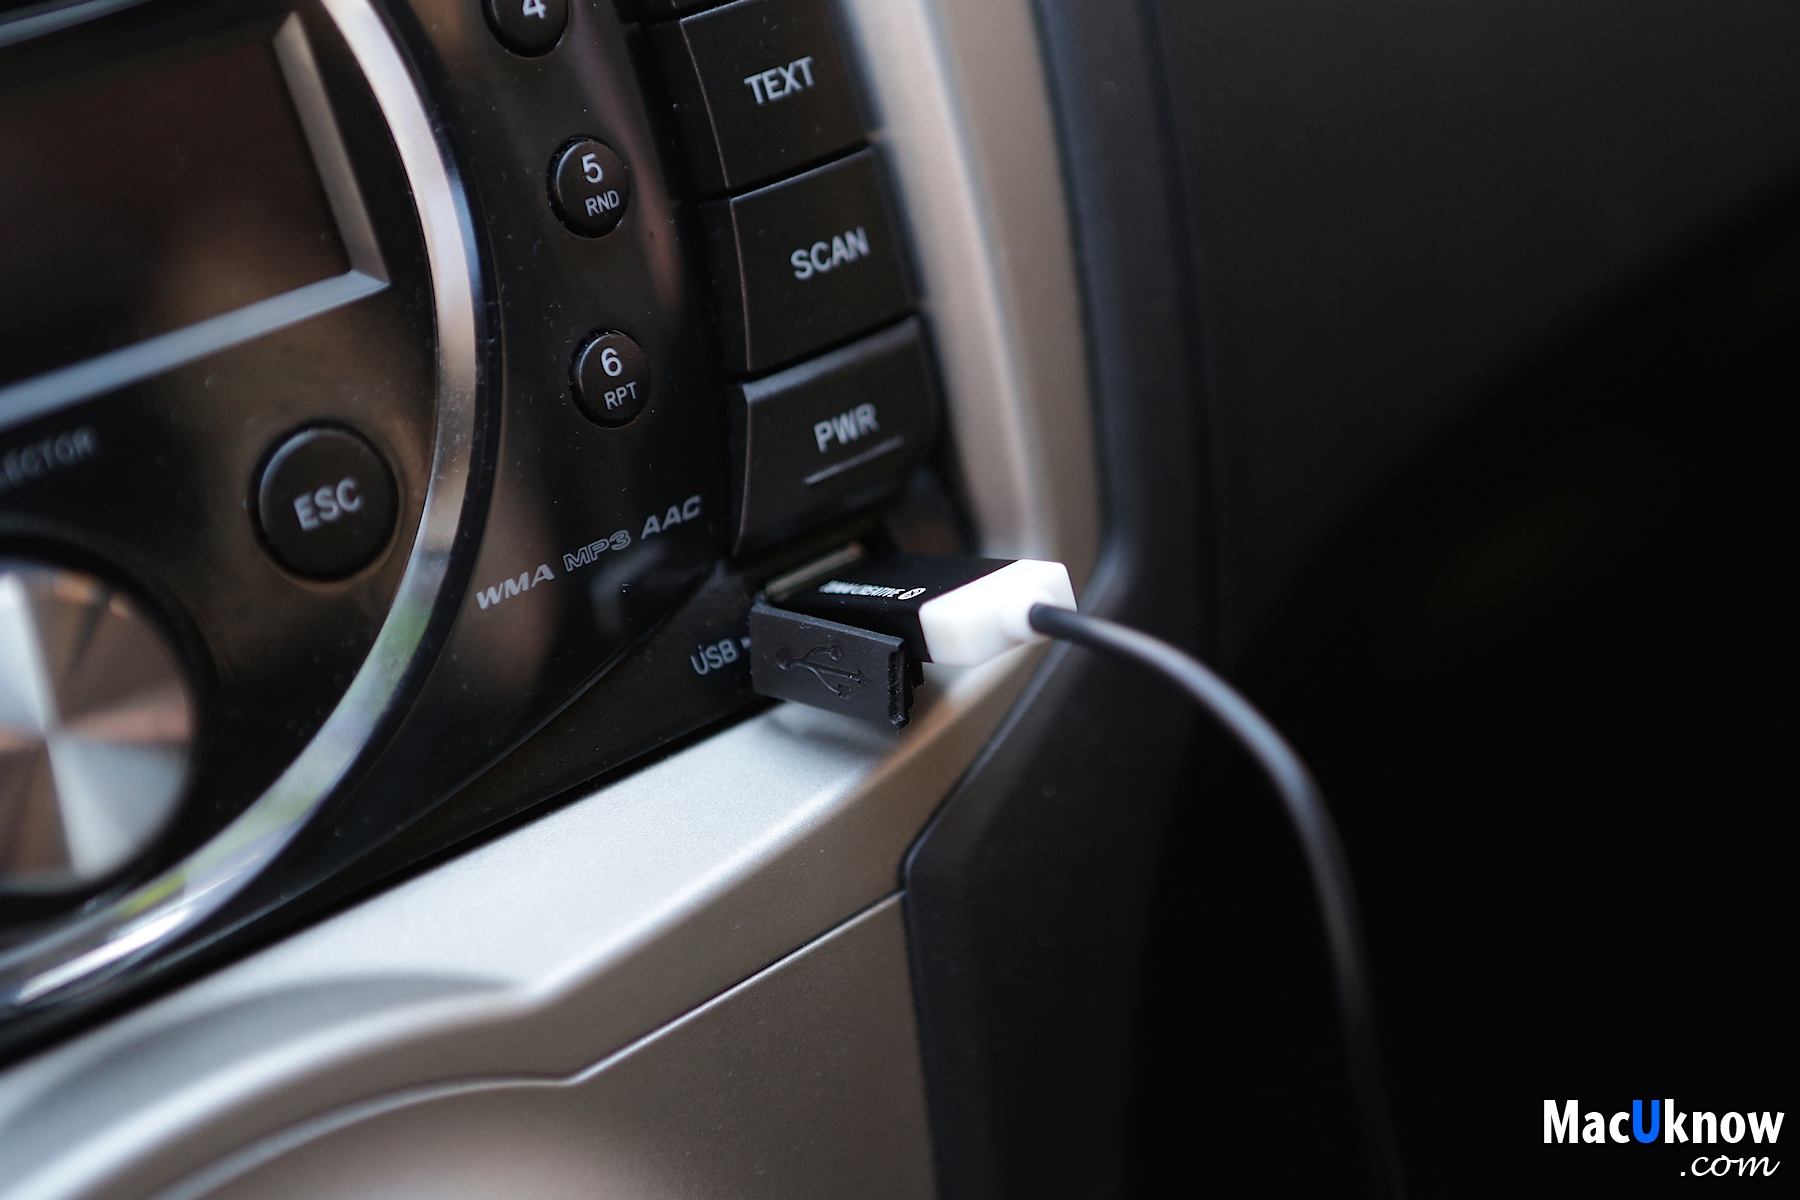 開箱 車用音響 一般音響升級藍牙無線 就靠它了 最小巧的藍牙音樂接收器 Tunai Firefly Macuknow